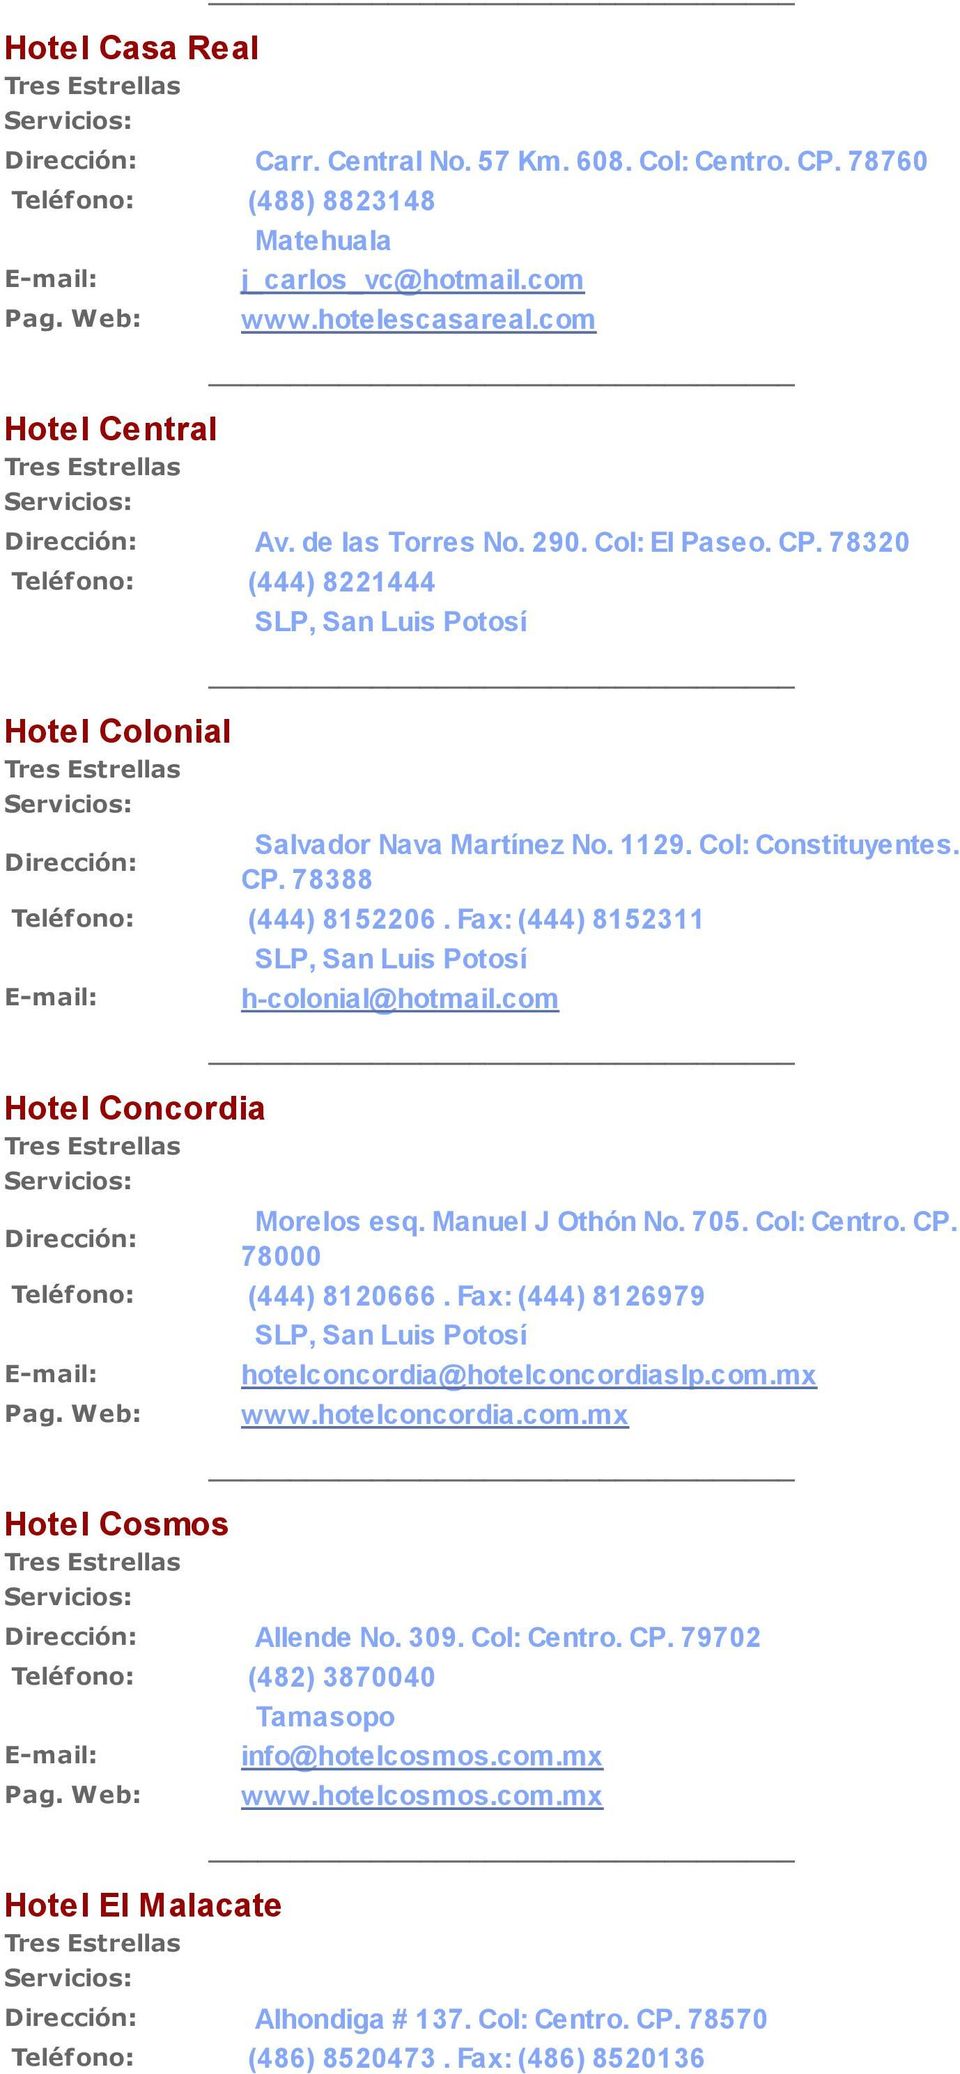 Fax: (444) 8152311 Hotel Concordia h-colonial@hotmail.com Morelos esq. Manuel J Othón No. 705. Col: Centro. CP. 78000 Teléfono: (444) 8120666. Fax: (444) 8126979 hotelconcordia@hotelconcordiaslp.com.mx www.